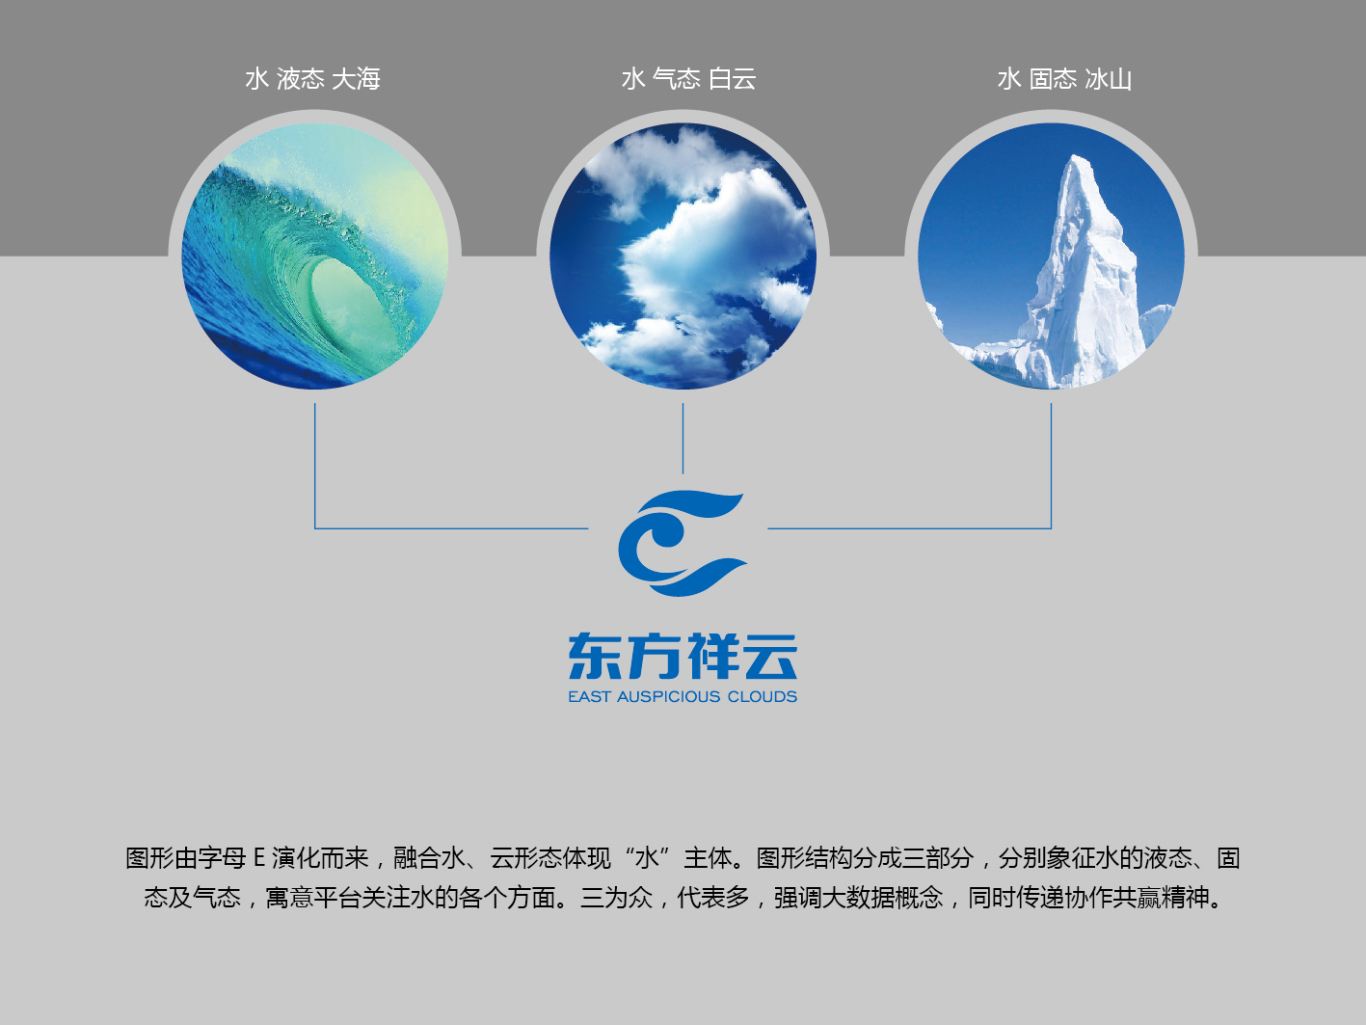 东方祥云大数据平台品牌形象设计图3